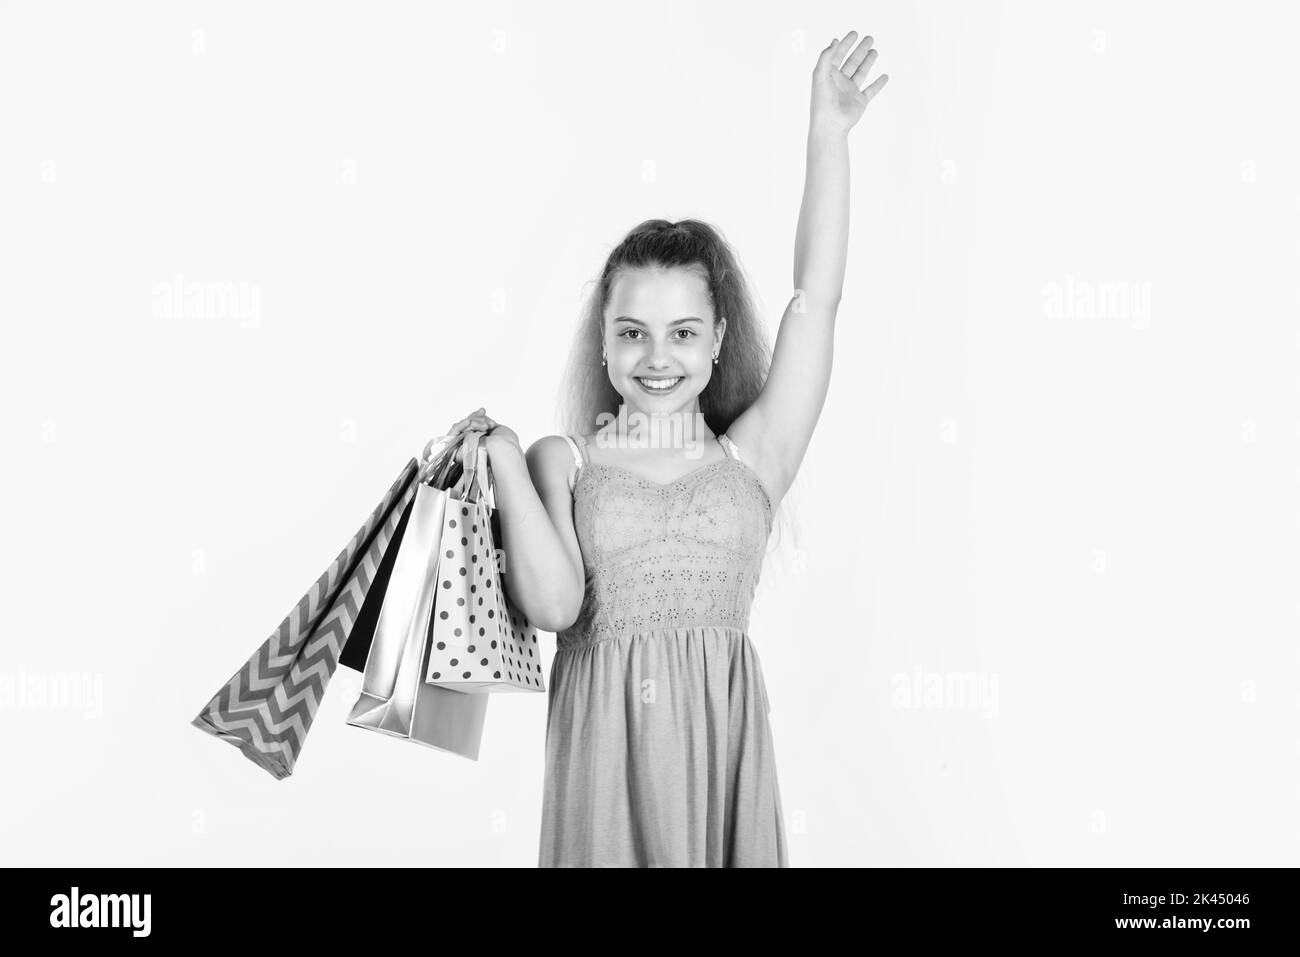 customer or shopper child isolated on white. happy childhood. shopaholic. Stock Photo